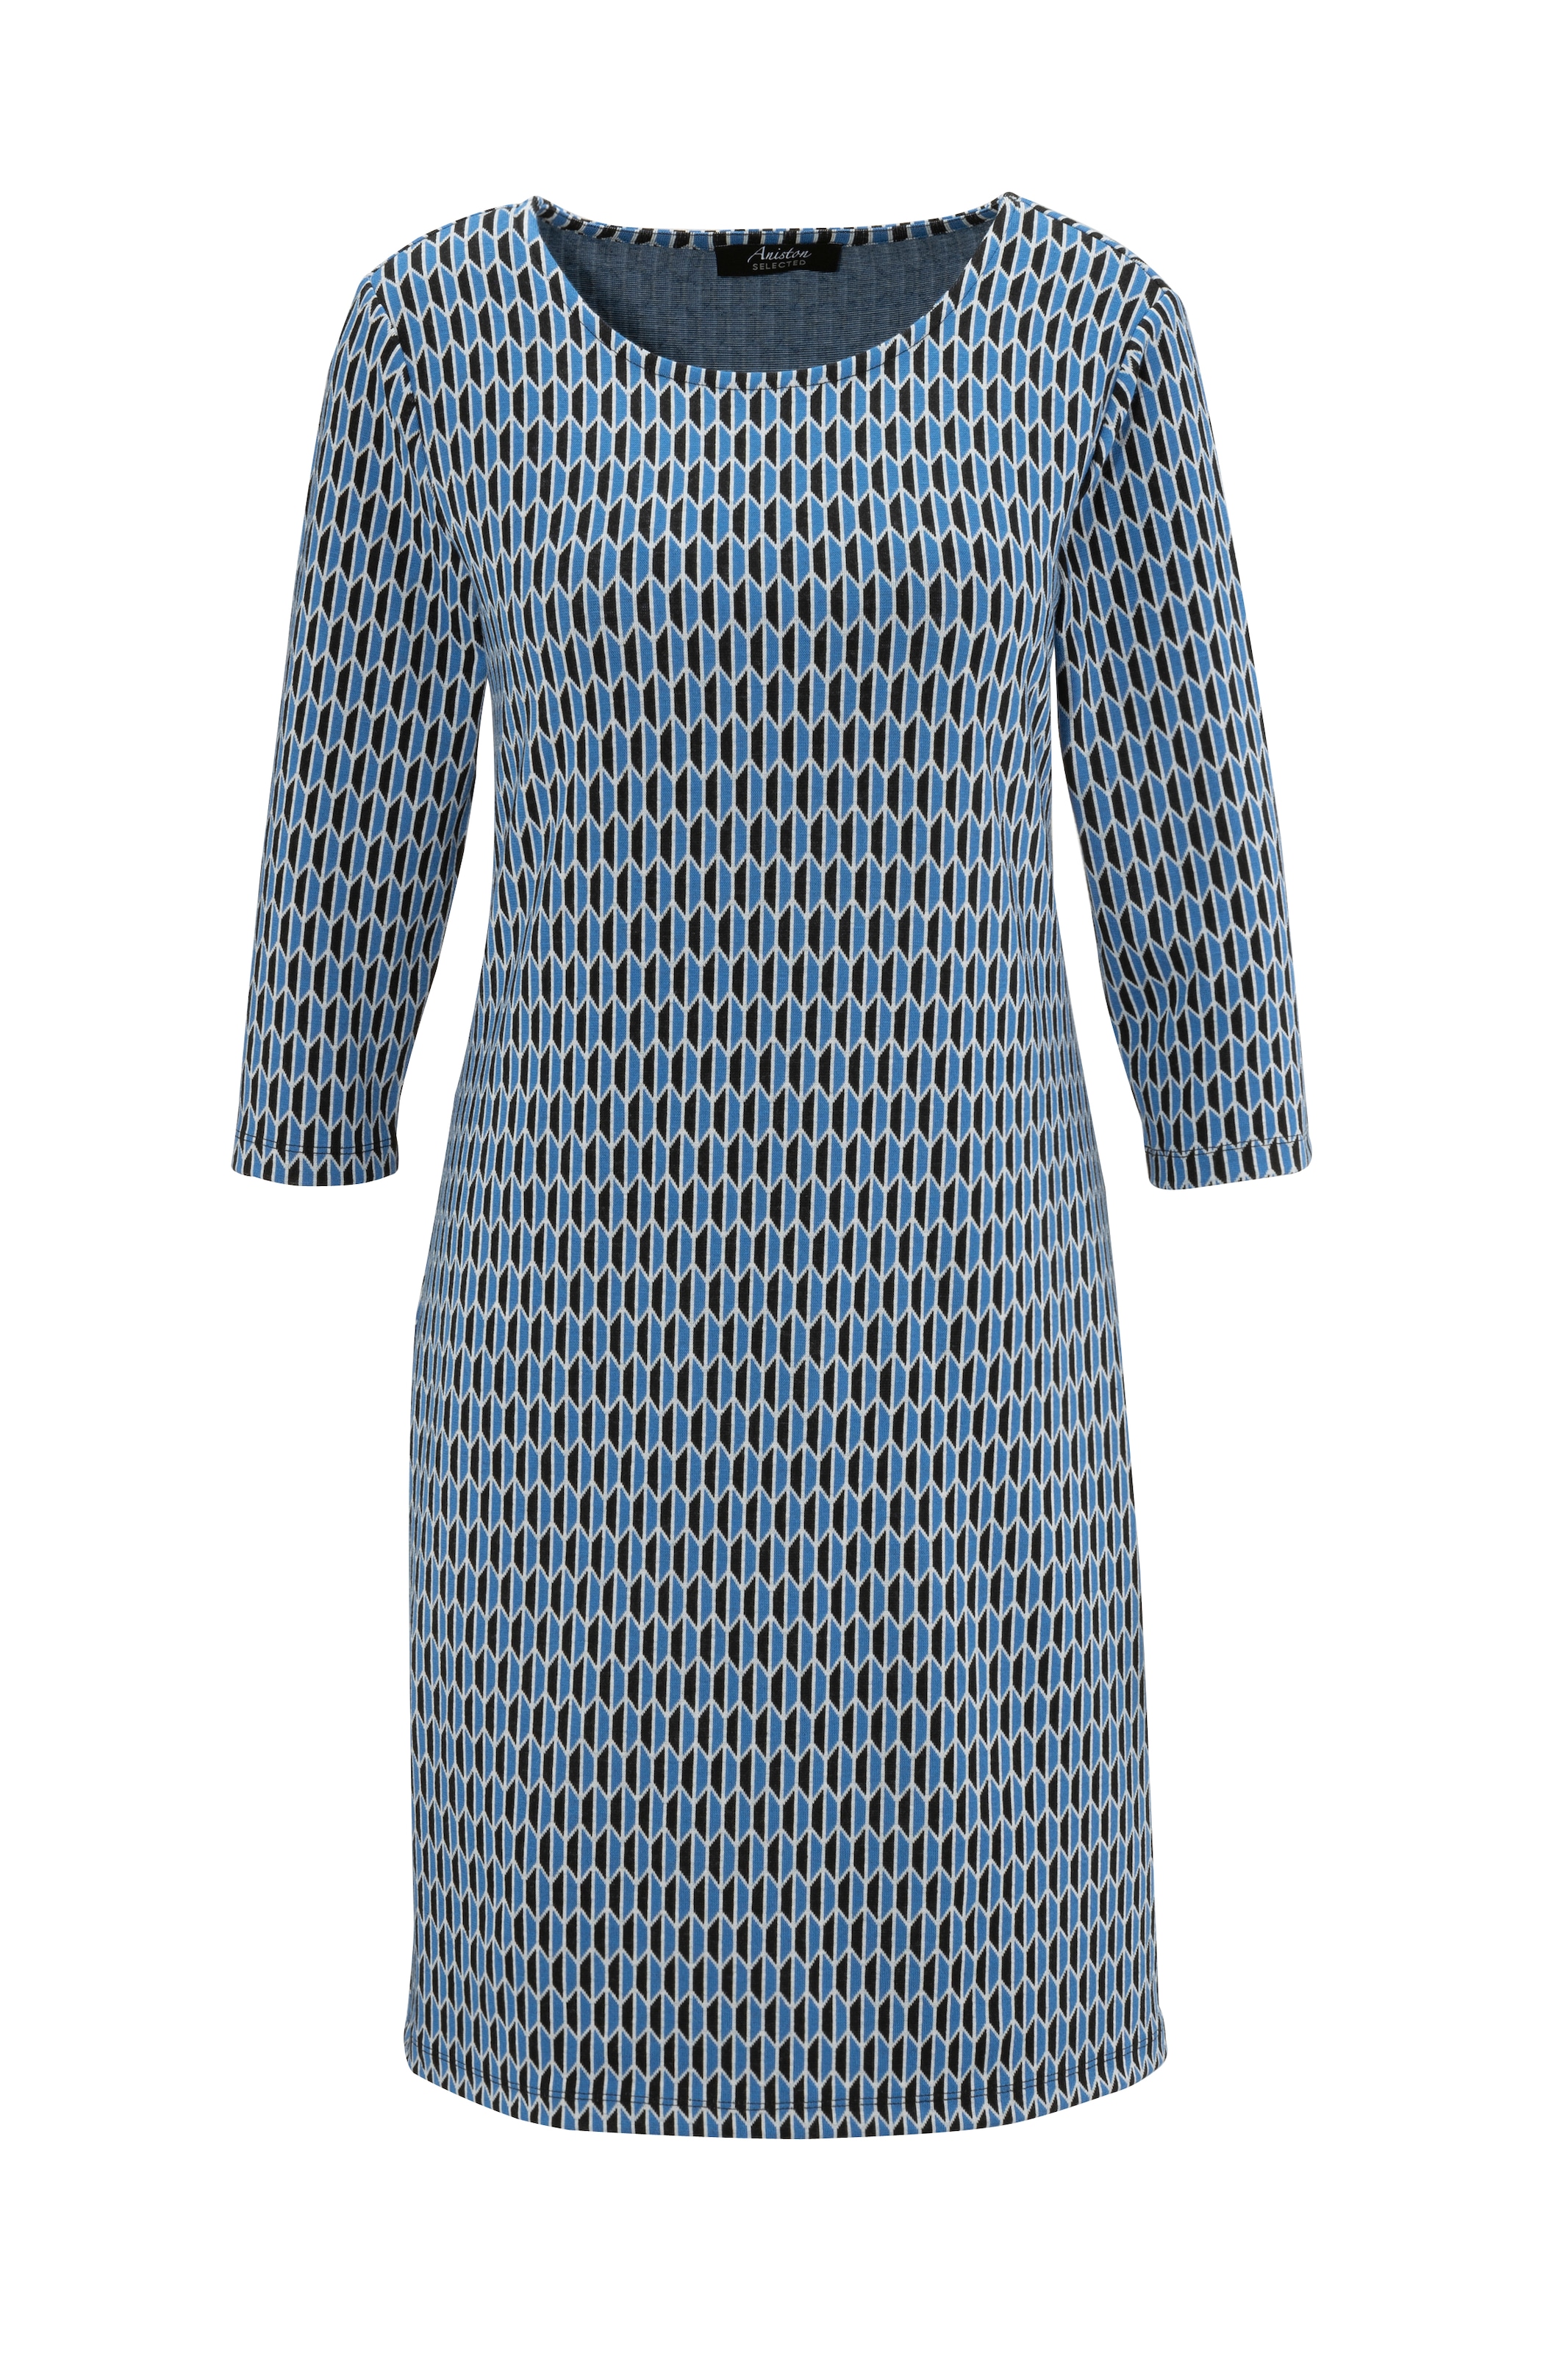 Aniston SELECTED Jerseykleid, mit geometrischem Muster und leichter Taillierung - NEUE KOLLEKTION